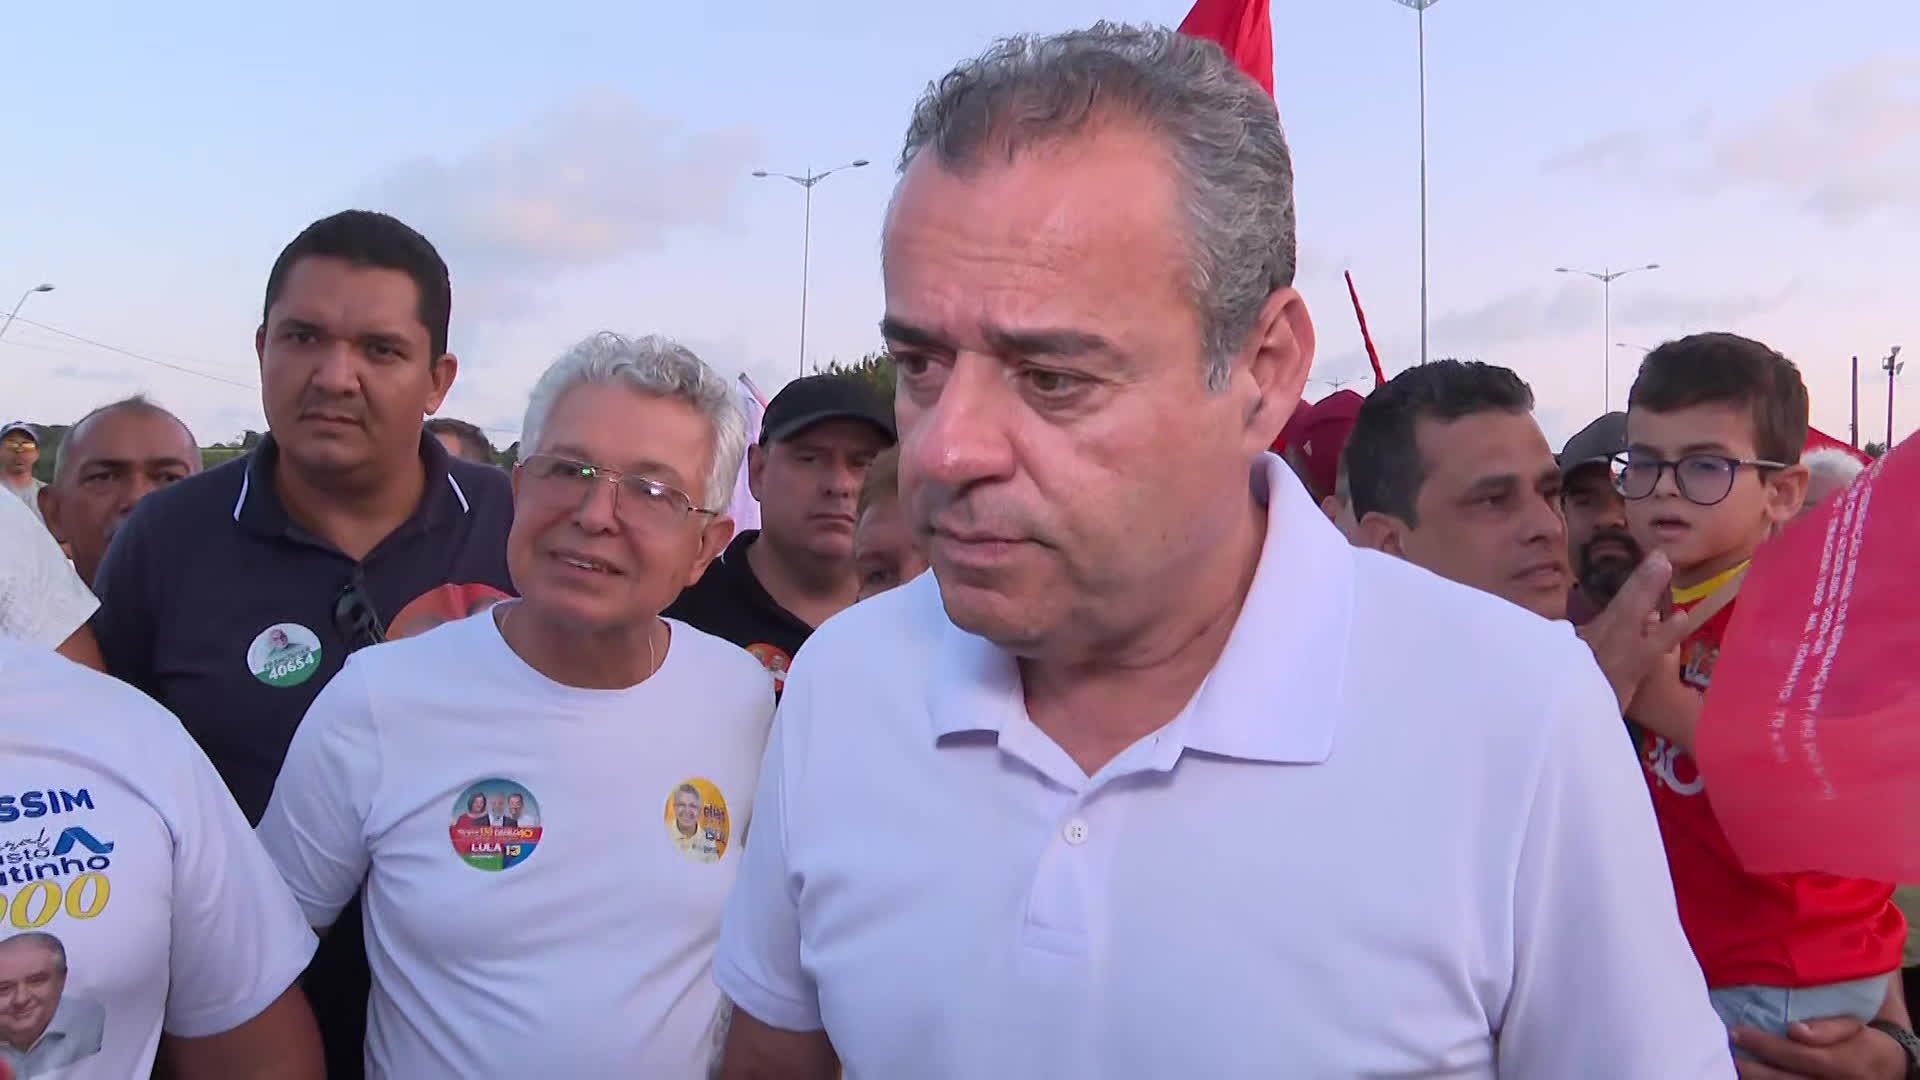 Danilo Cabral faz carreata em Jaboatão e promete contratar 10 mil policiais para reforçar segurança pública